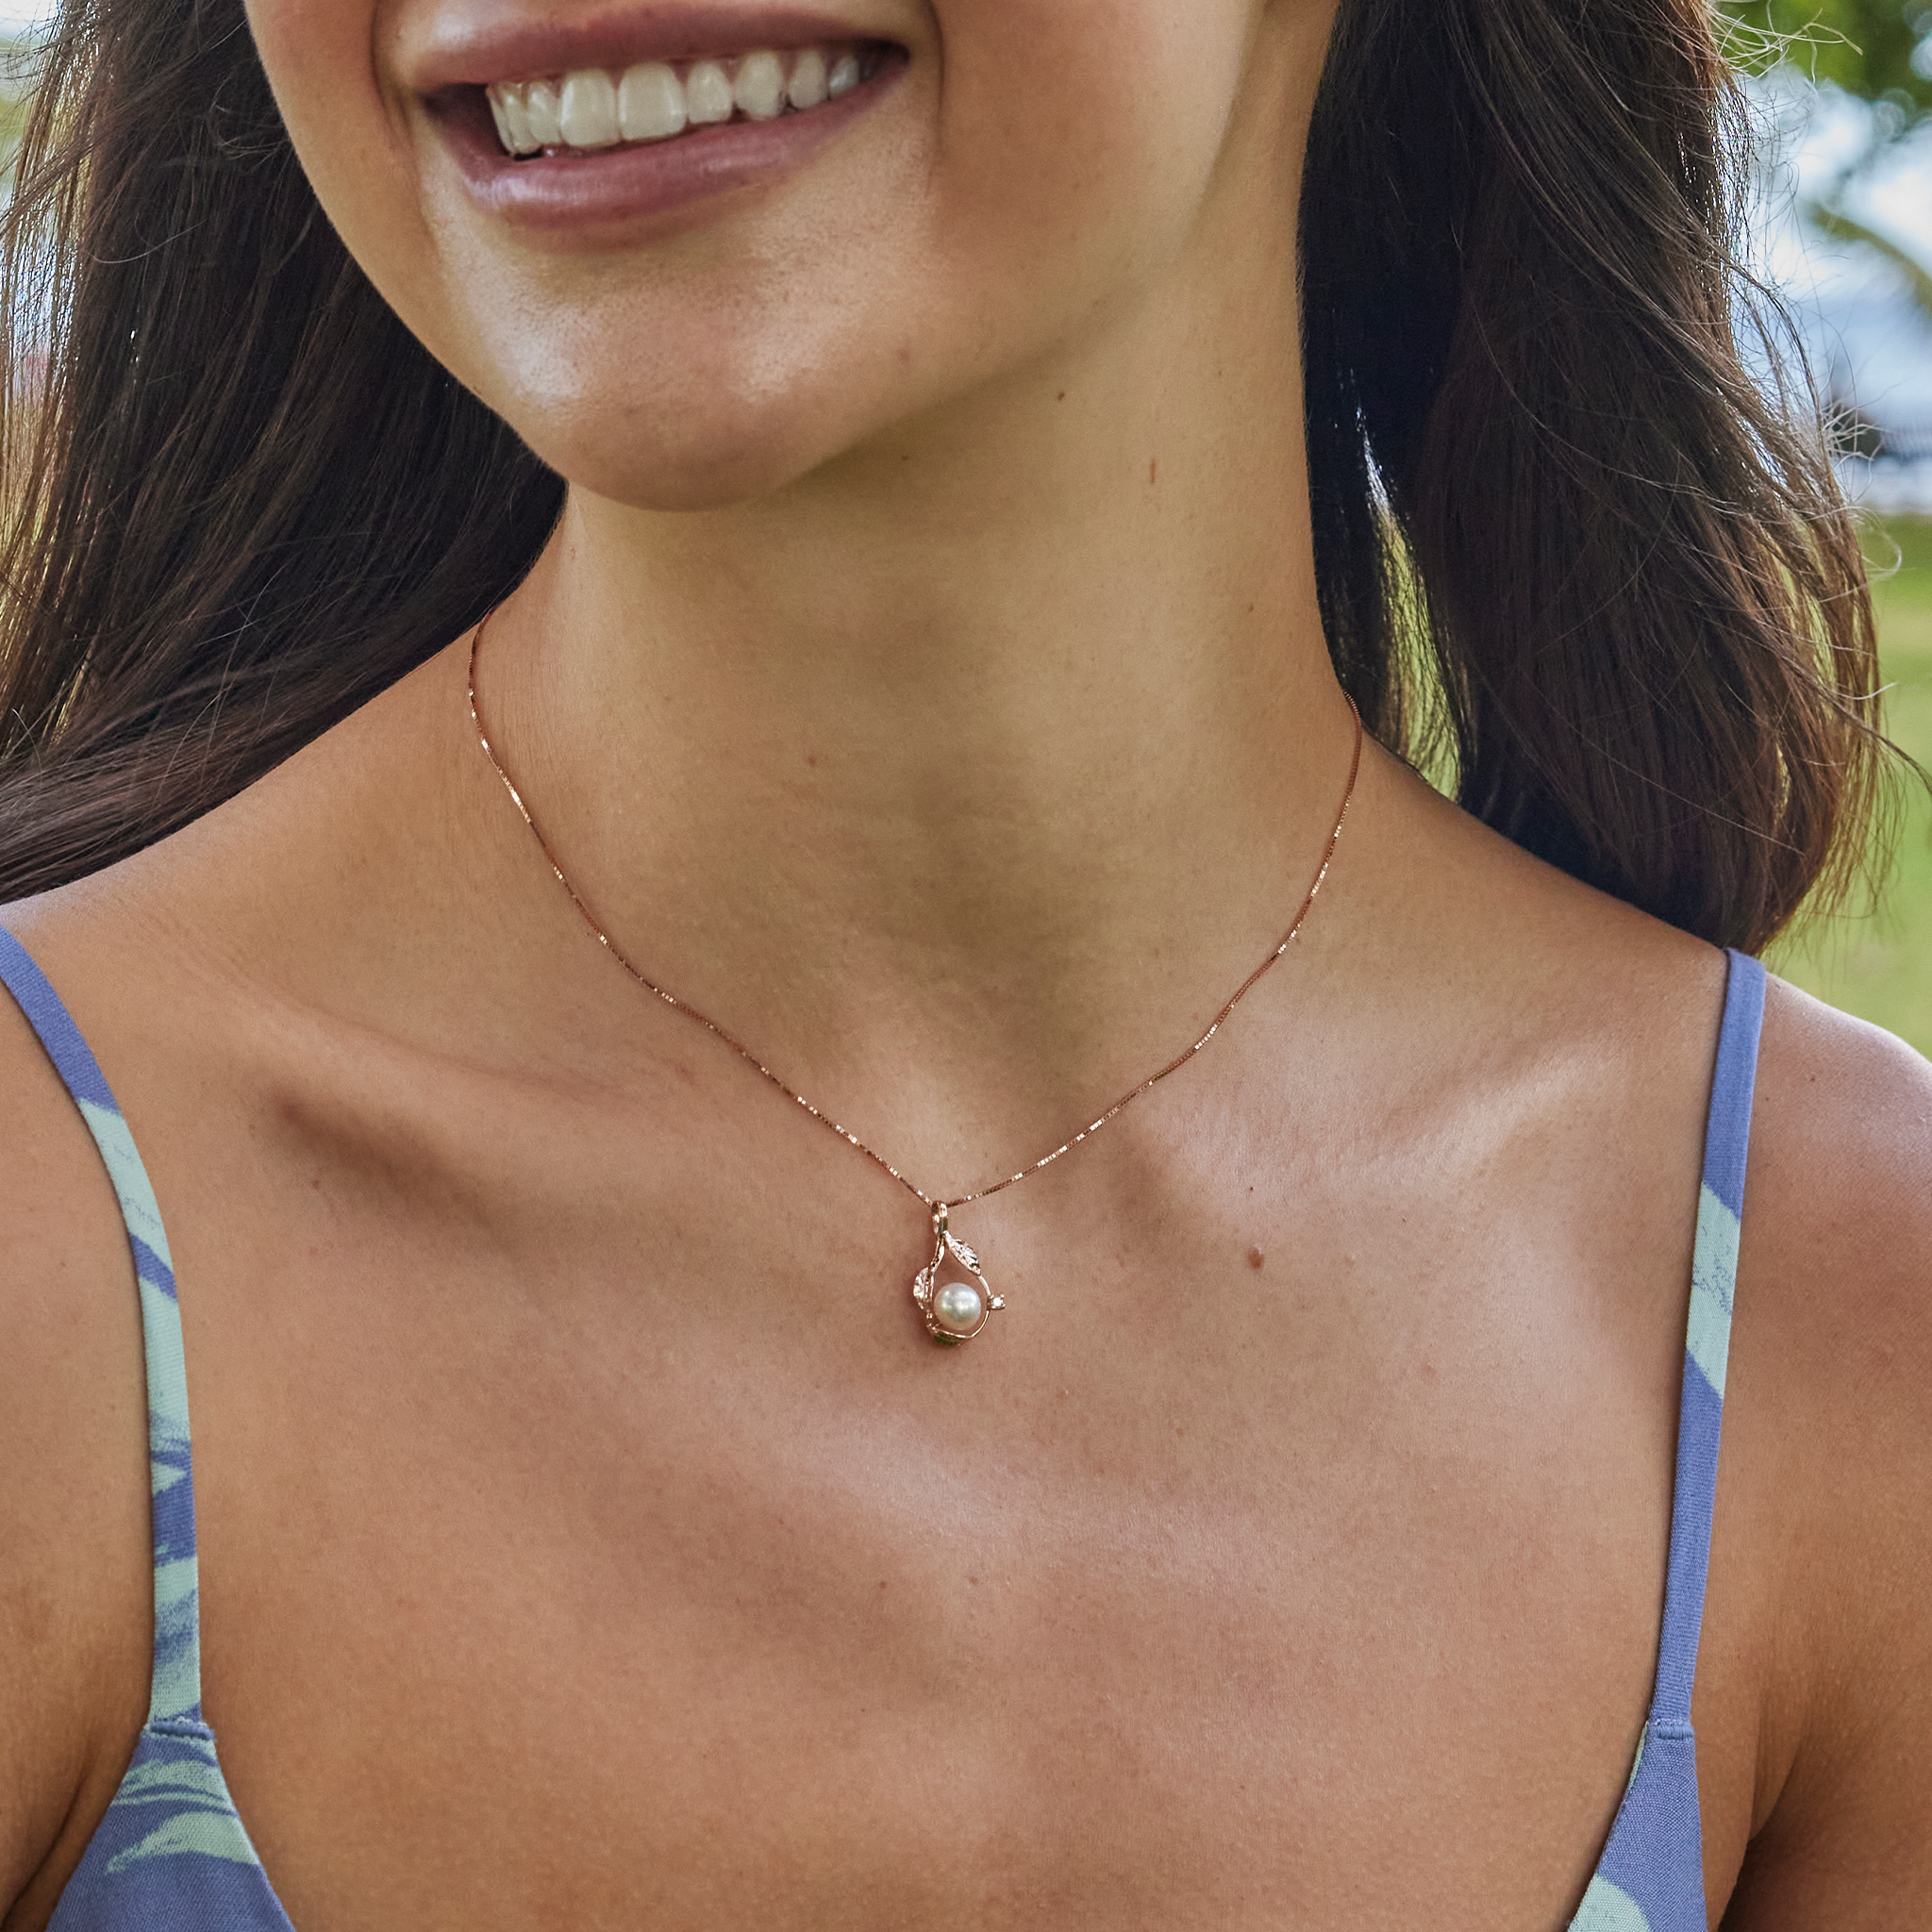 Choisissez un pendentif de perle en or rose avec des diamants